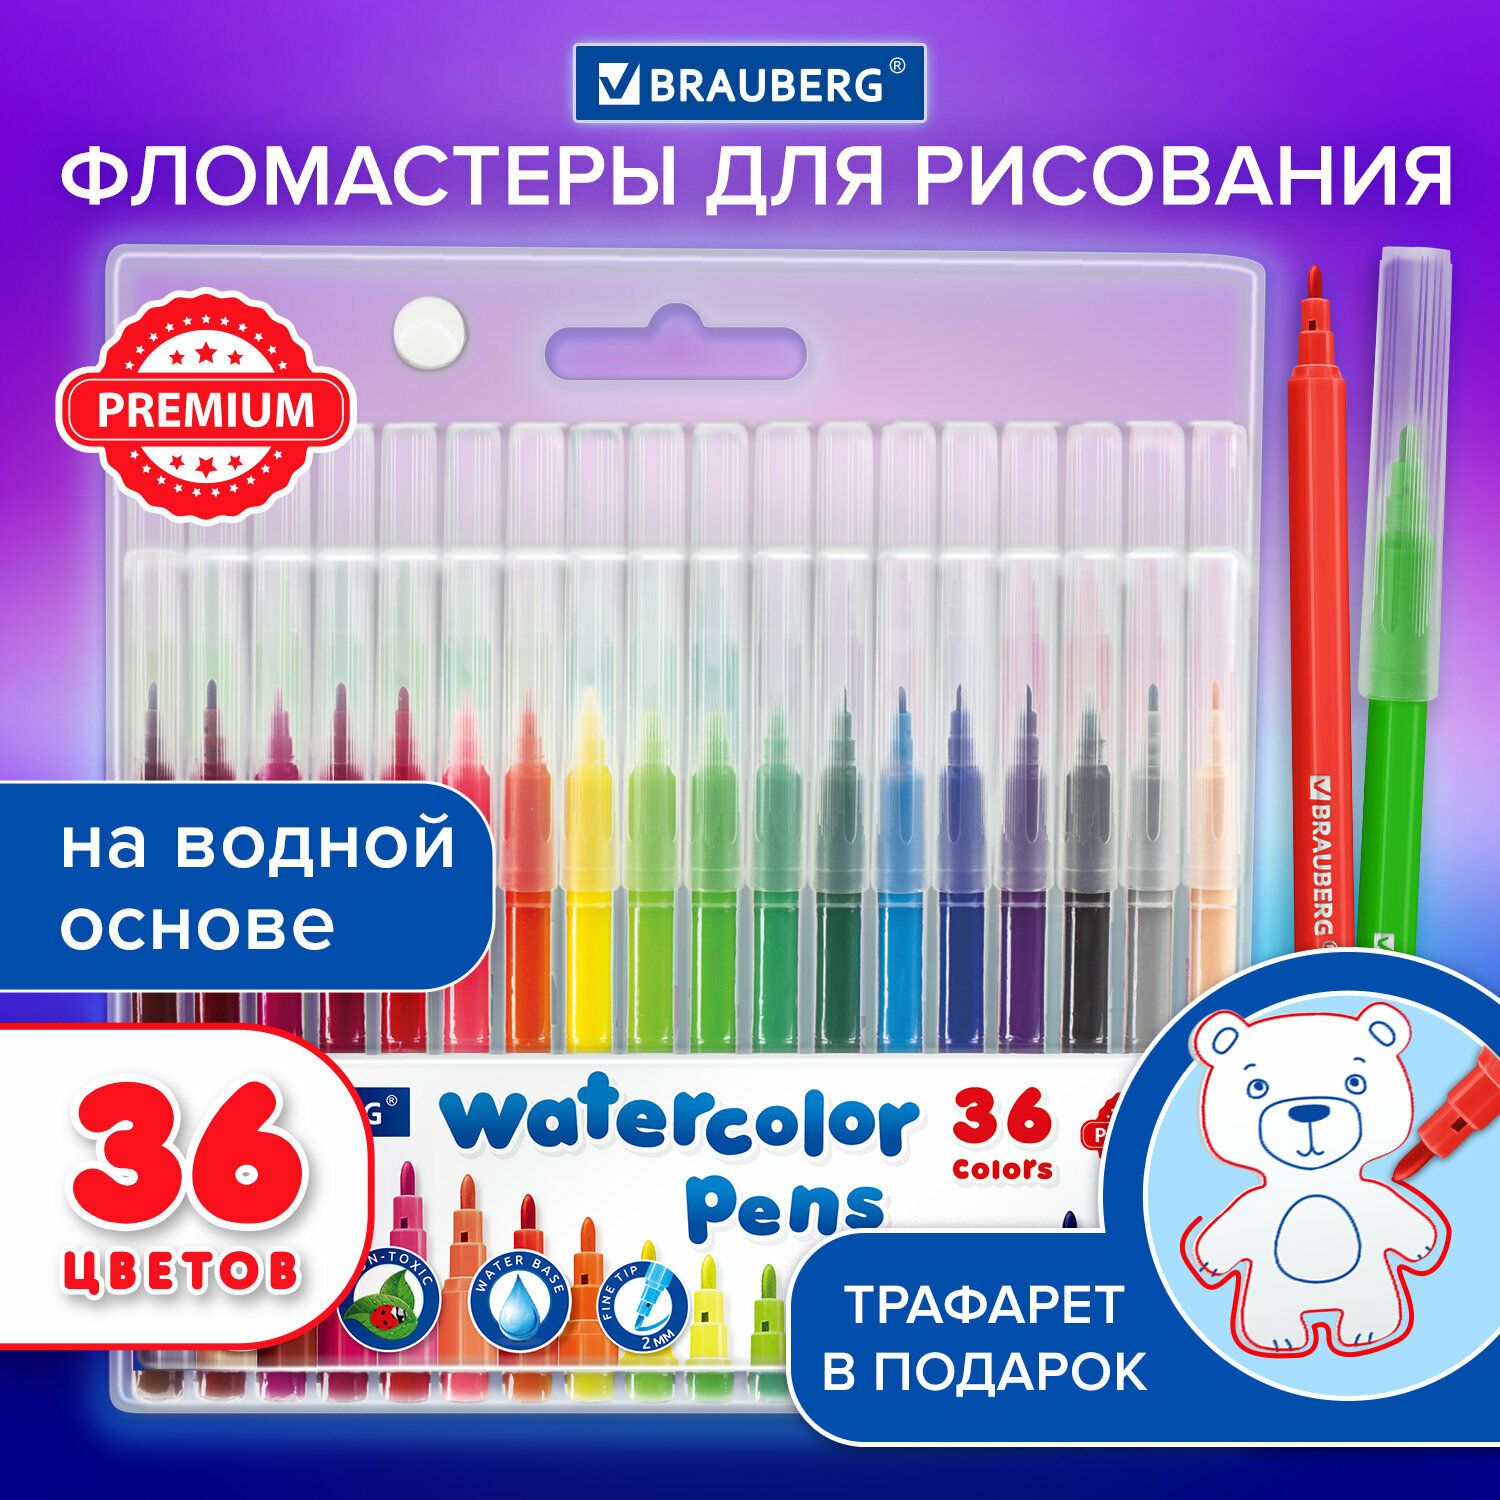 Фломастеры для рисования детские цветные набор 36 штук для творчества на водной основе классические ПВХ упаковка Brauberg Premium 152505